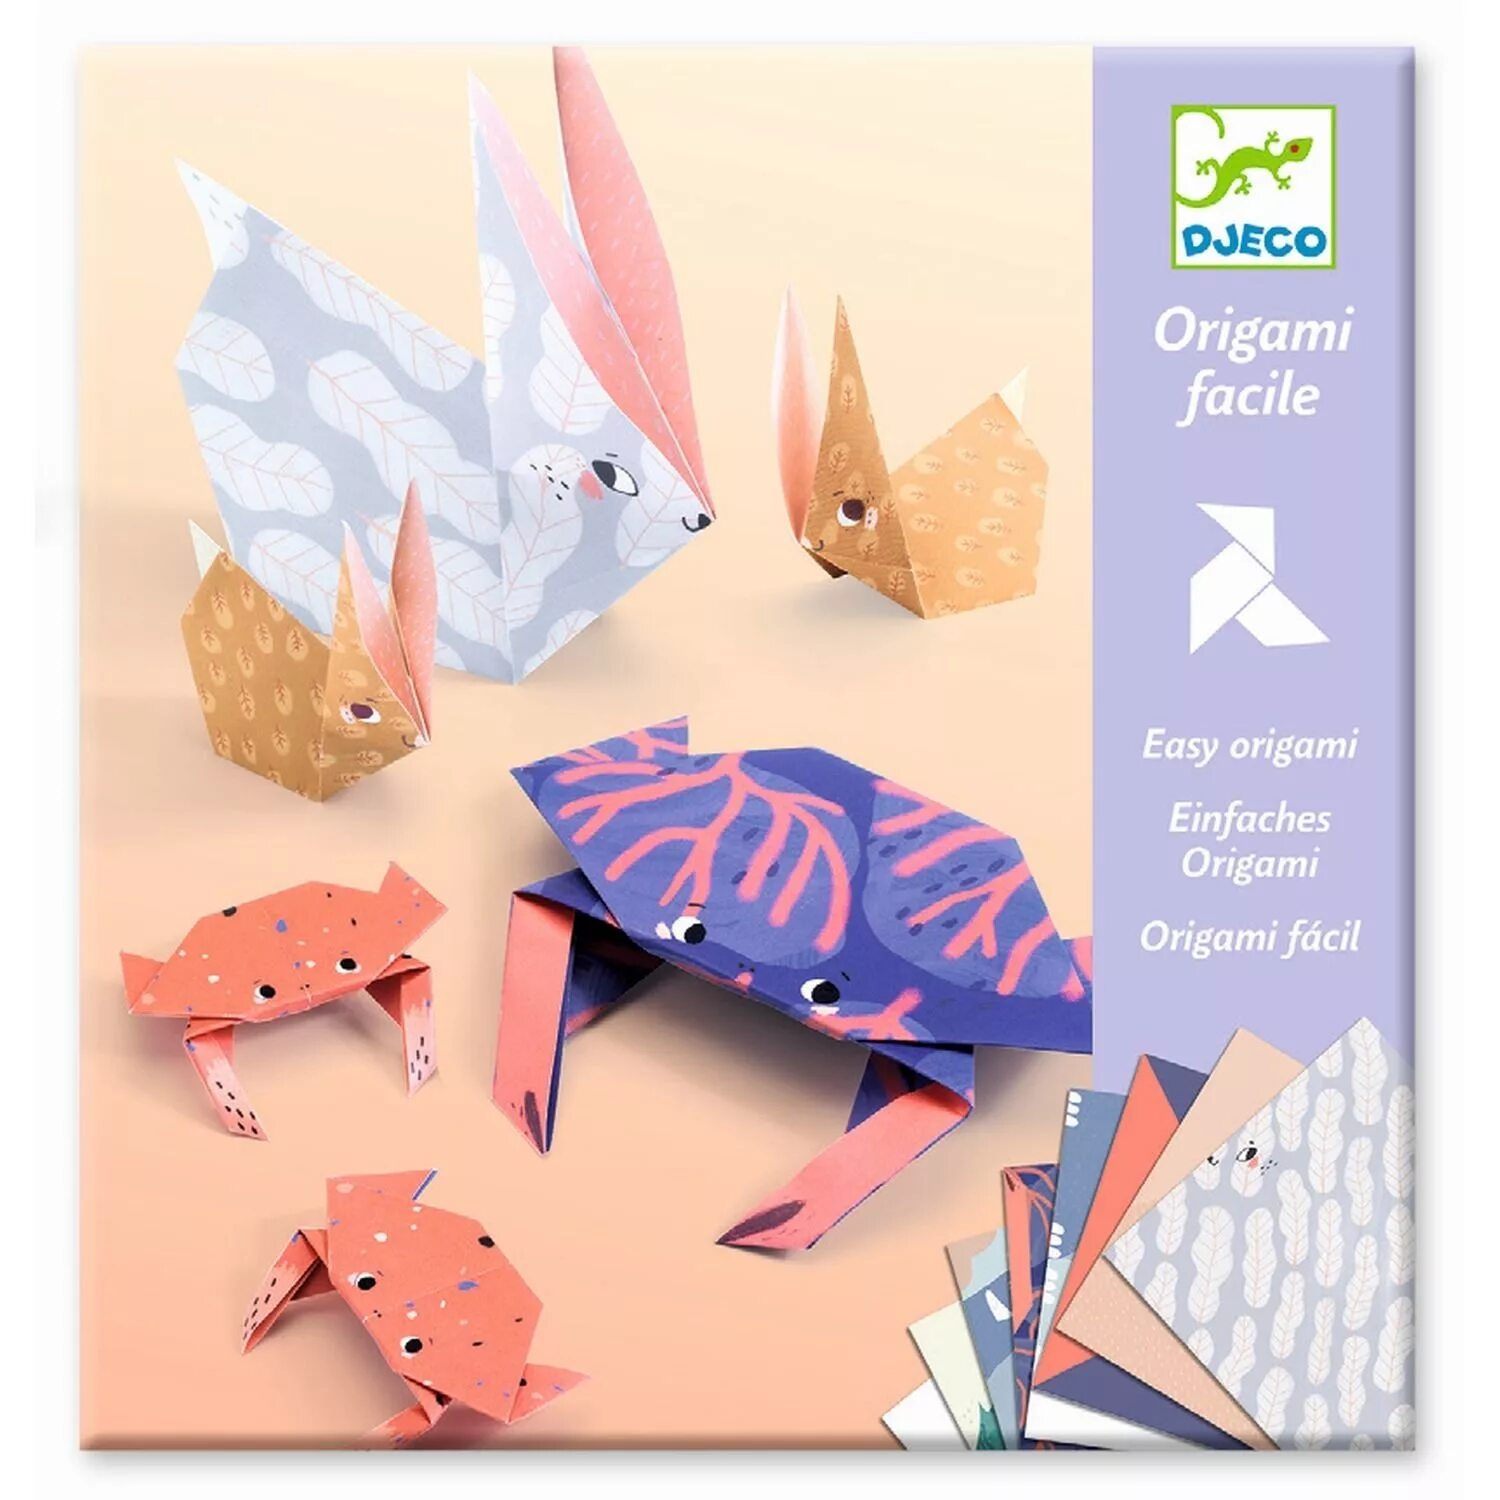 Оригами семей. Джеко оригами динозавры. Оригами Djeco семьи 08759. Набор для оригами Djeco семьи 08759. Оригами Djeco планеры (08760).